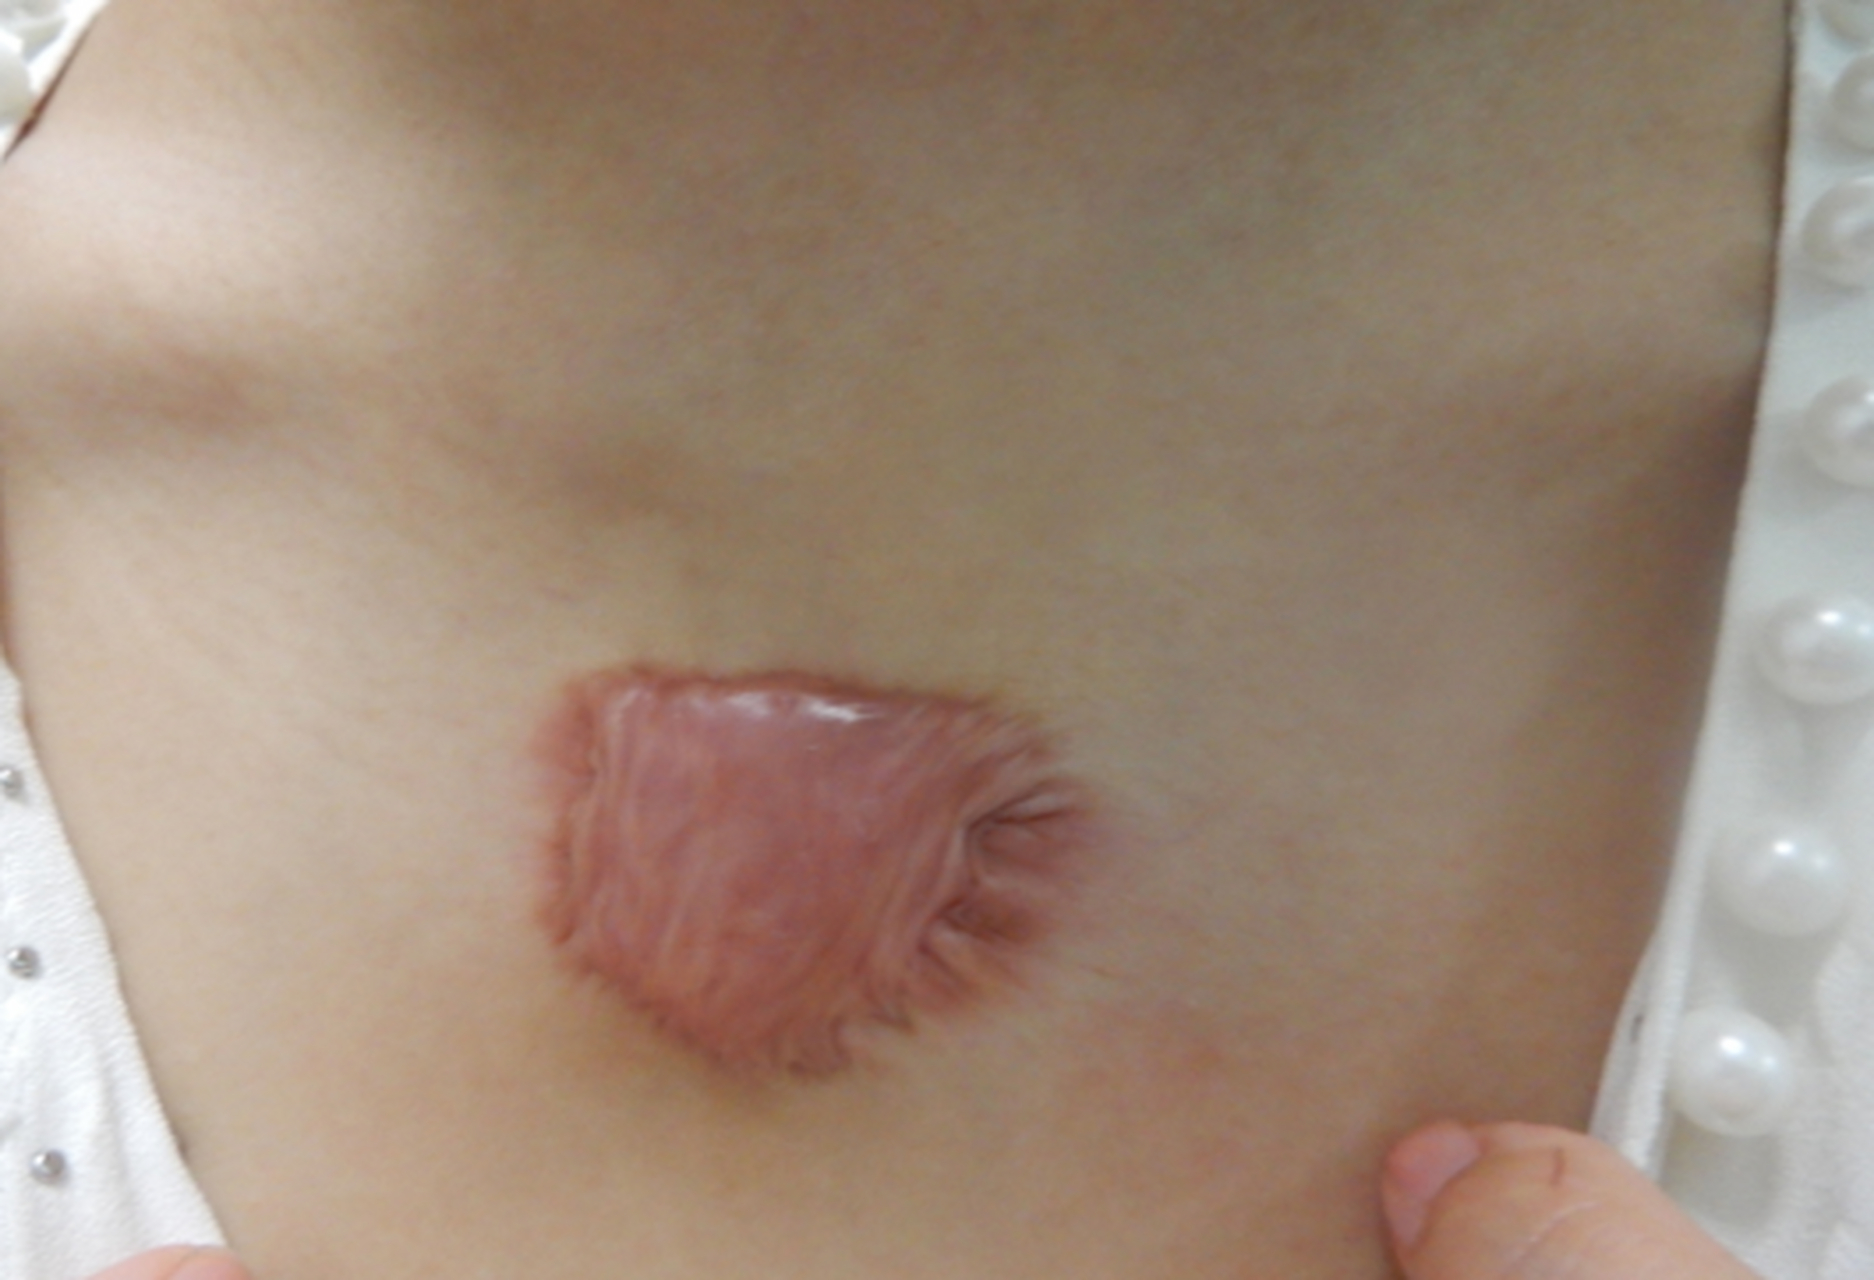 患者后背和胸口都有疤痕疙瘩,三年前毛囊炎导致的,刚开始只是一浮小